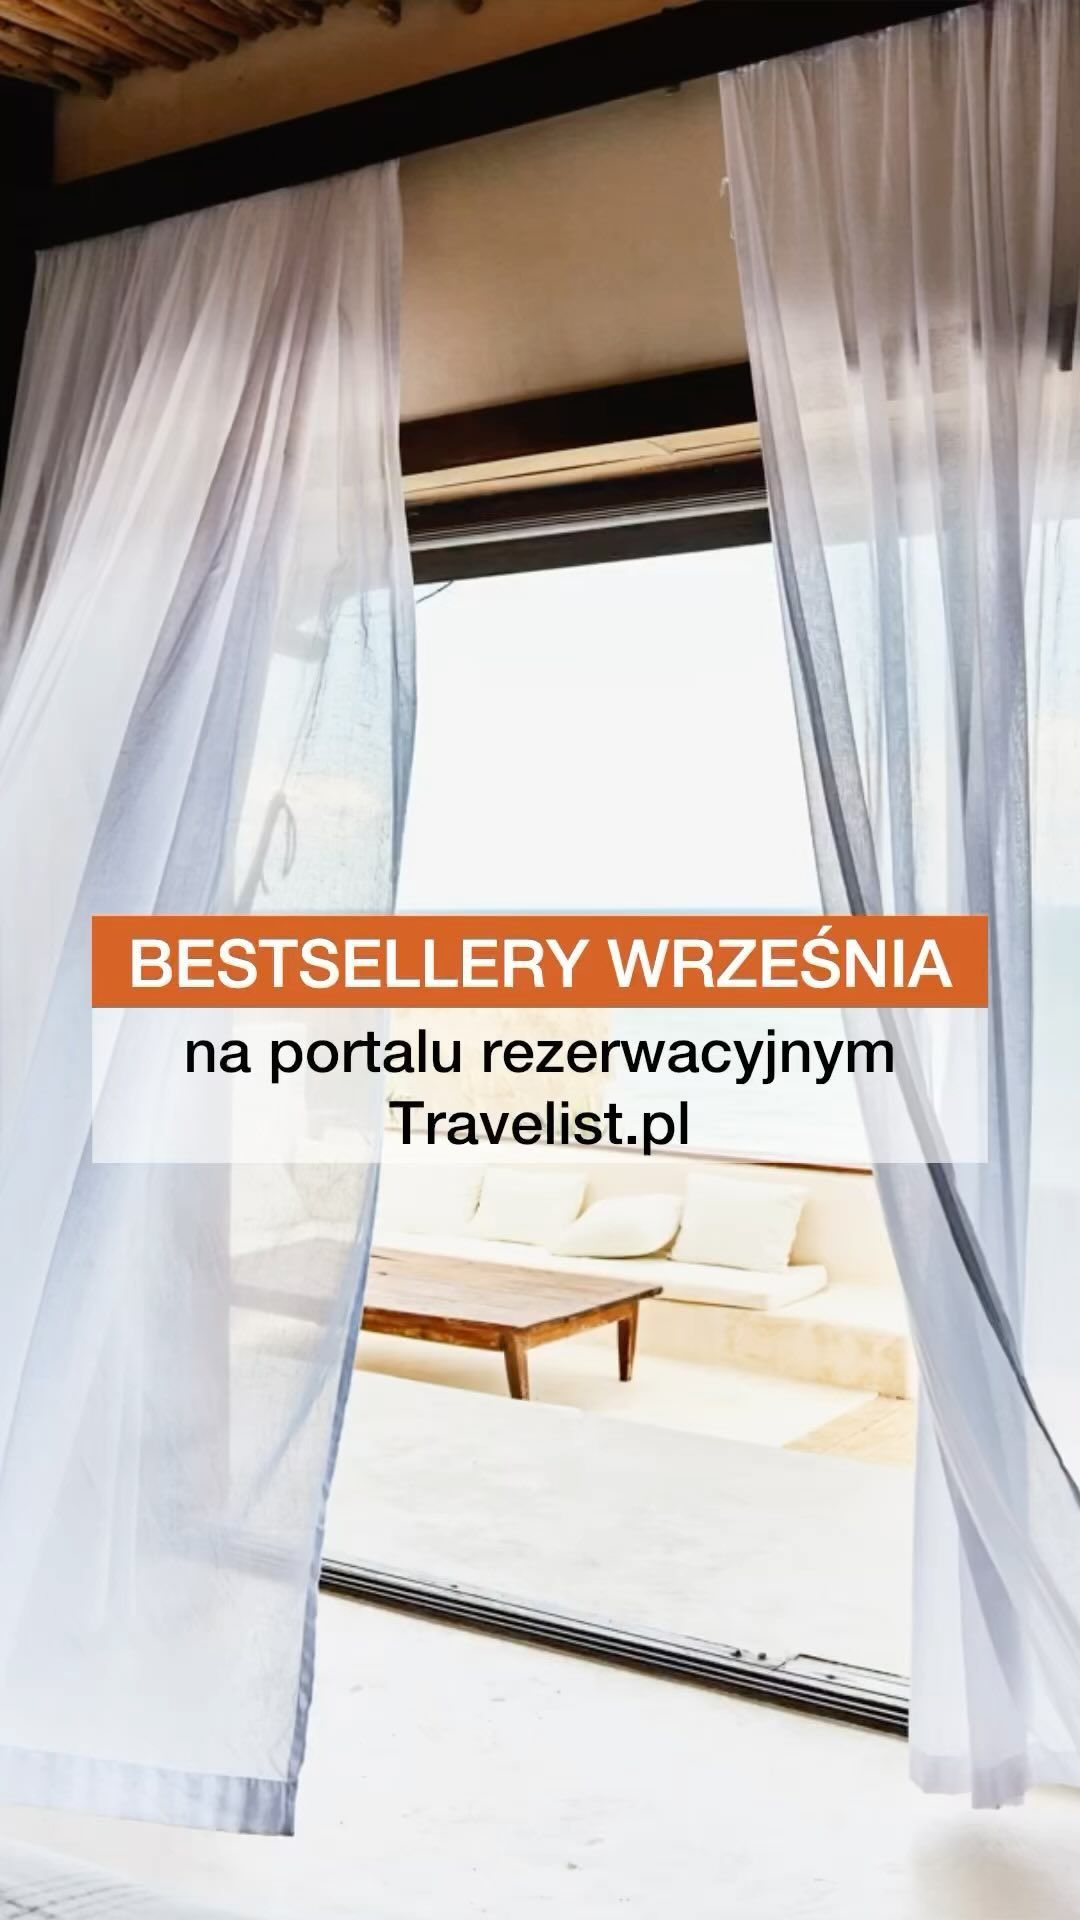 Podziel się wrażeniami, jeśli był_ś już w którymś z tych obiektów! Twój komentarz może pomóc w decyzji innym 😊
Na Travelist.pl wszystkie te hotele znajdziesz z gwarancją najlepszej ceny. Sprawdź BIO ➡️ @Travelist.pl  #bestselleryWrześnia #bestsellerTravelist #zniżki #wyprzedaż #GwarancjaNajlepszejCeny #hotele #podróże #travel #odliczanie #gdzienaweekend